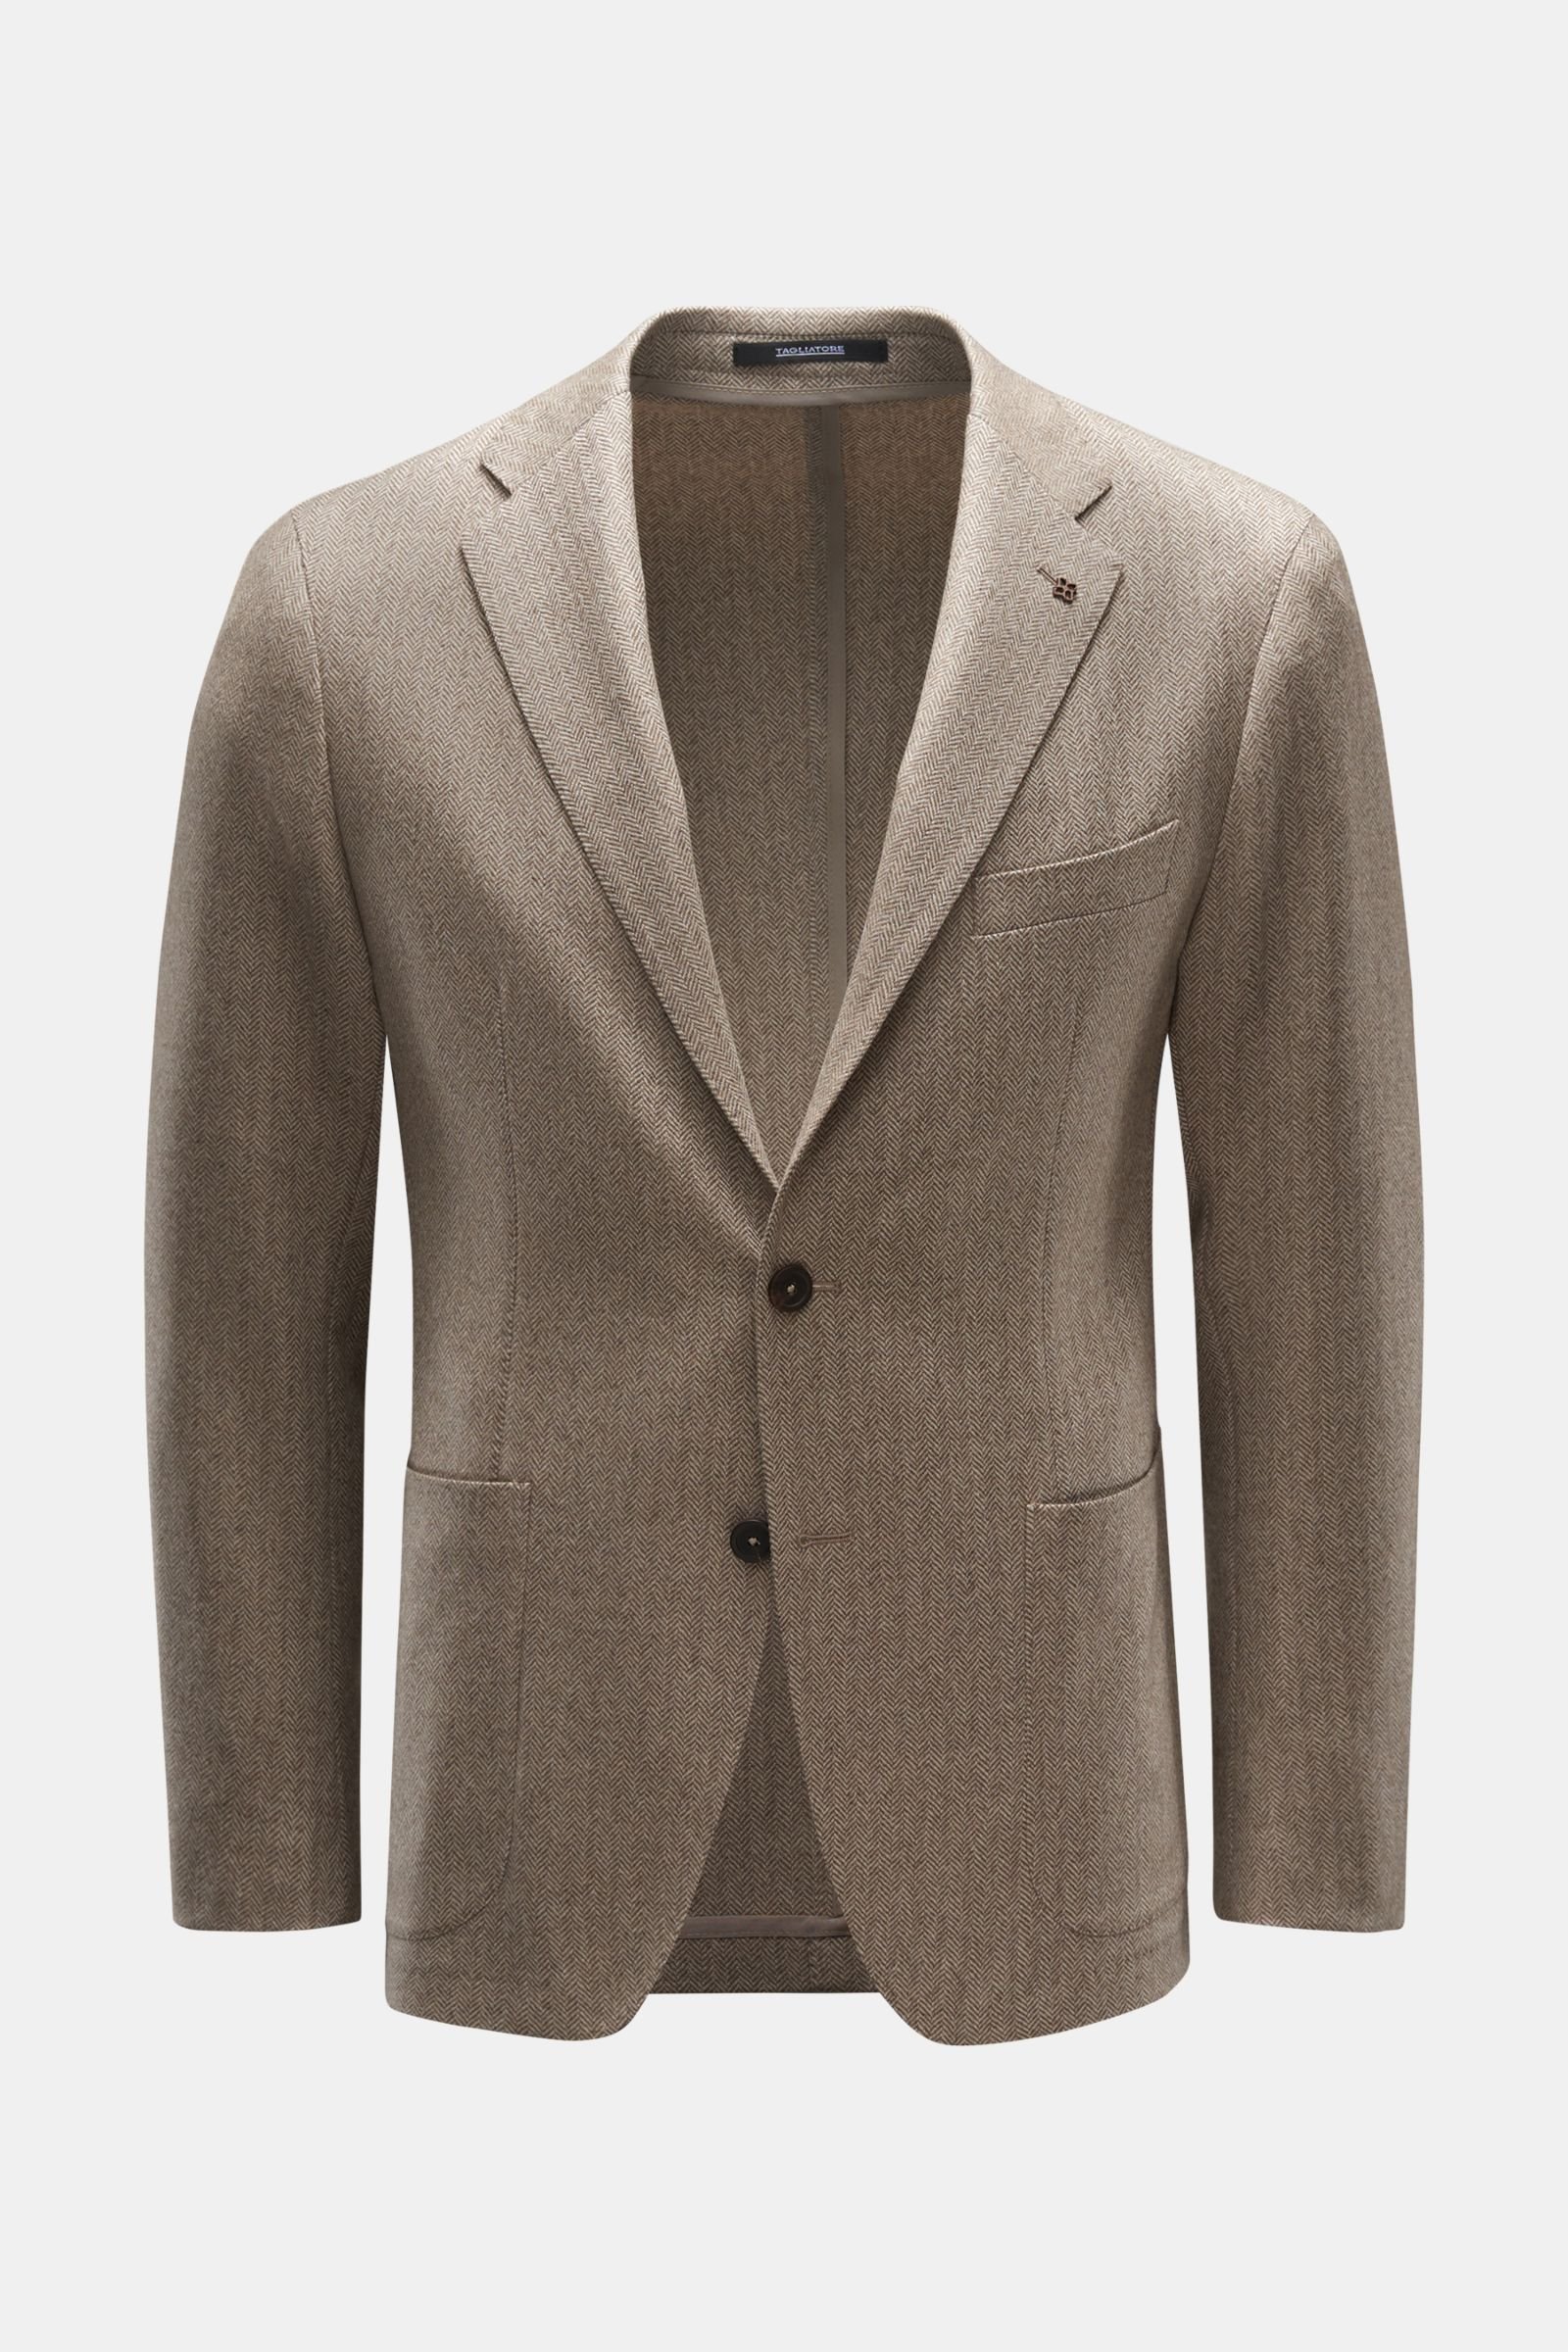 Smart-casual jacket 'Dakar' beige/grey-brown patterned